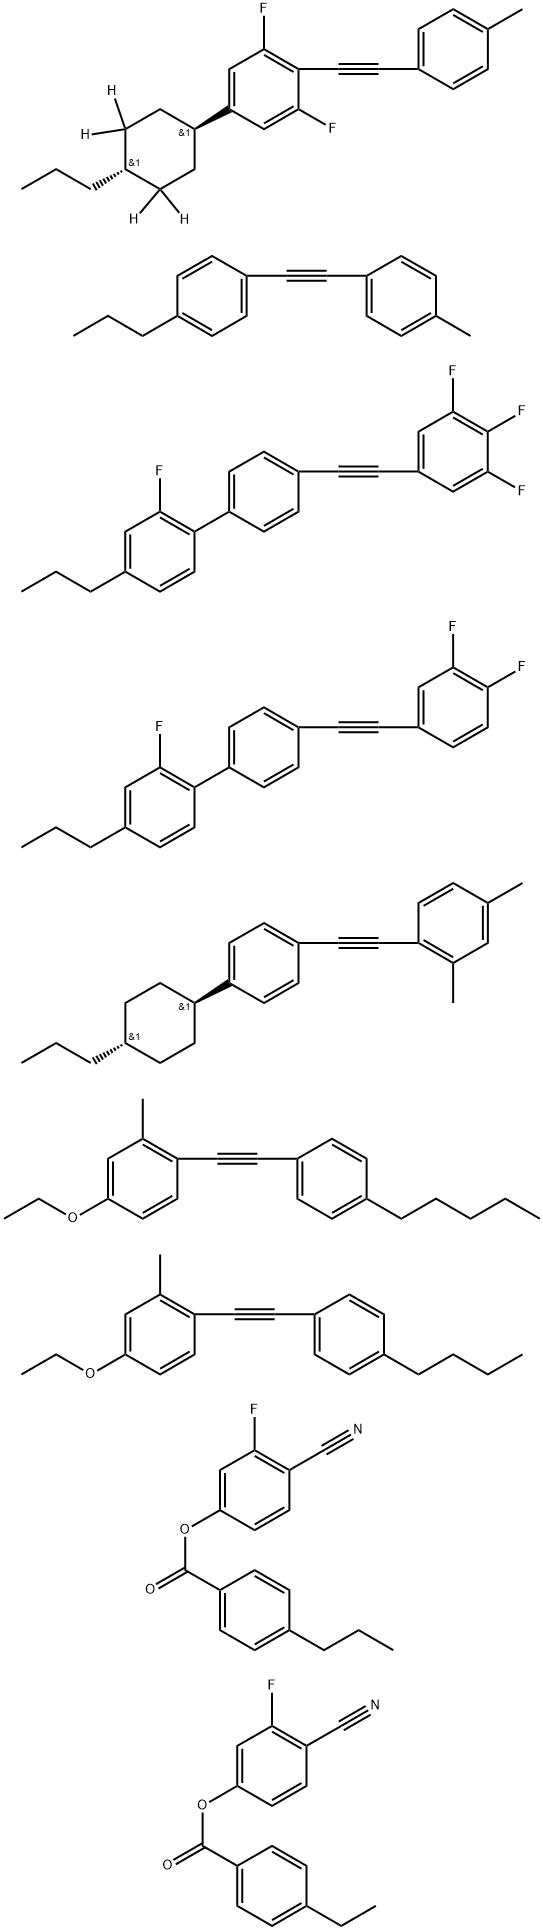 Benzoic acid, 4-ethyl-, 4-cyano-3-fluorophenyl ester, mixt. with 1-[(4-butylphenyl)ethynyl]-4-ethoxy-2-methylbenzene, 4-cyano-3-fluorophenyl 4-propylbenzoate, 1,3-difluoro-2-[(4-methylphenyl)ethynyl]-5-(trans-4-propylcyclohexyl-3,3,5,5-d4)benzene, 4′-[(3,4-difluorophenyl)ethynyl]-2-fluoro-4-propyl-1,1′-biphenyl, 2,4-dimethyl-1-[[4-(trans-4-propylcyclohexyl)phenyl]ethynyl]benzene, 4-ethoxy-2-methyl-1-[(4-pentylphenyl)ethynyl]benzene, 2-fluoro-4-propyl-4′-[(3,4,5-trifluorophenyl)ethynyl]-1,1′-biphenyl and 1-[(4-methylphenyl)ethynyl]-4-propylbenzene 结构式